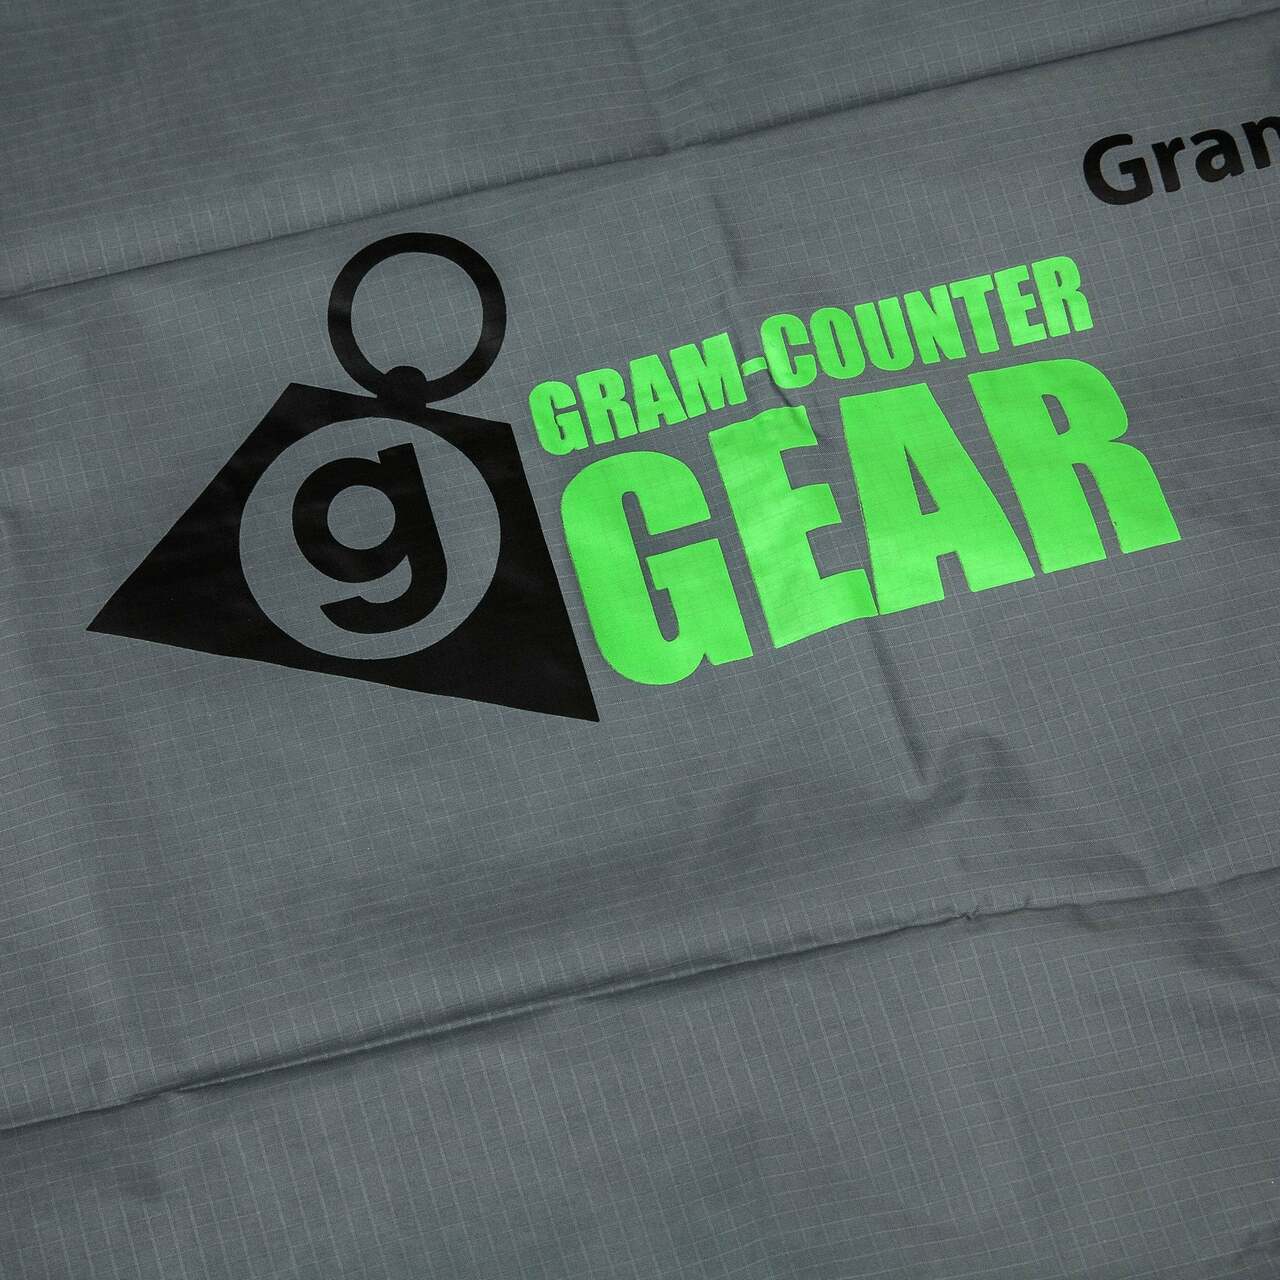 Gram-Counter Gear Ultra Groundsheet large - 140 x 210 cm